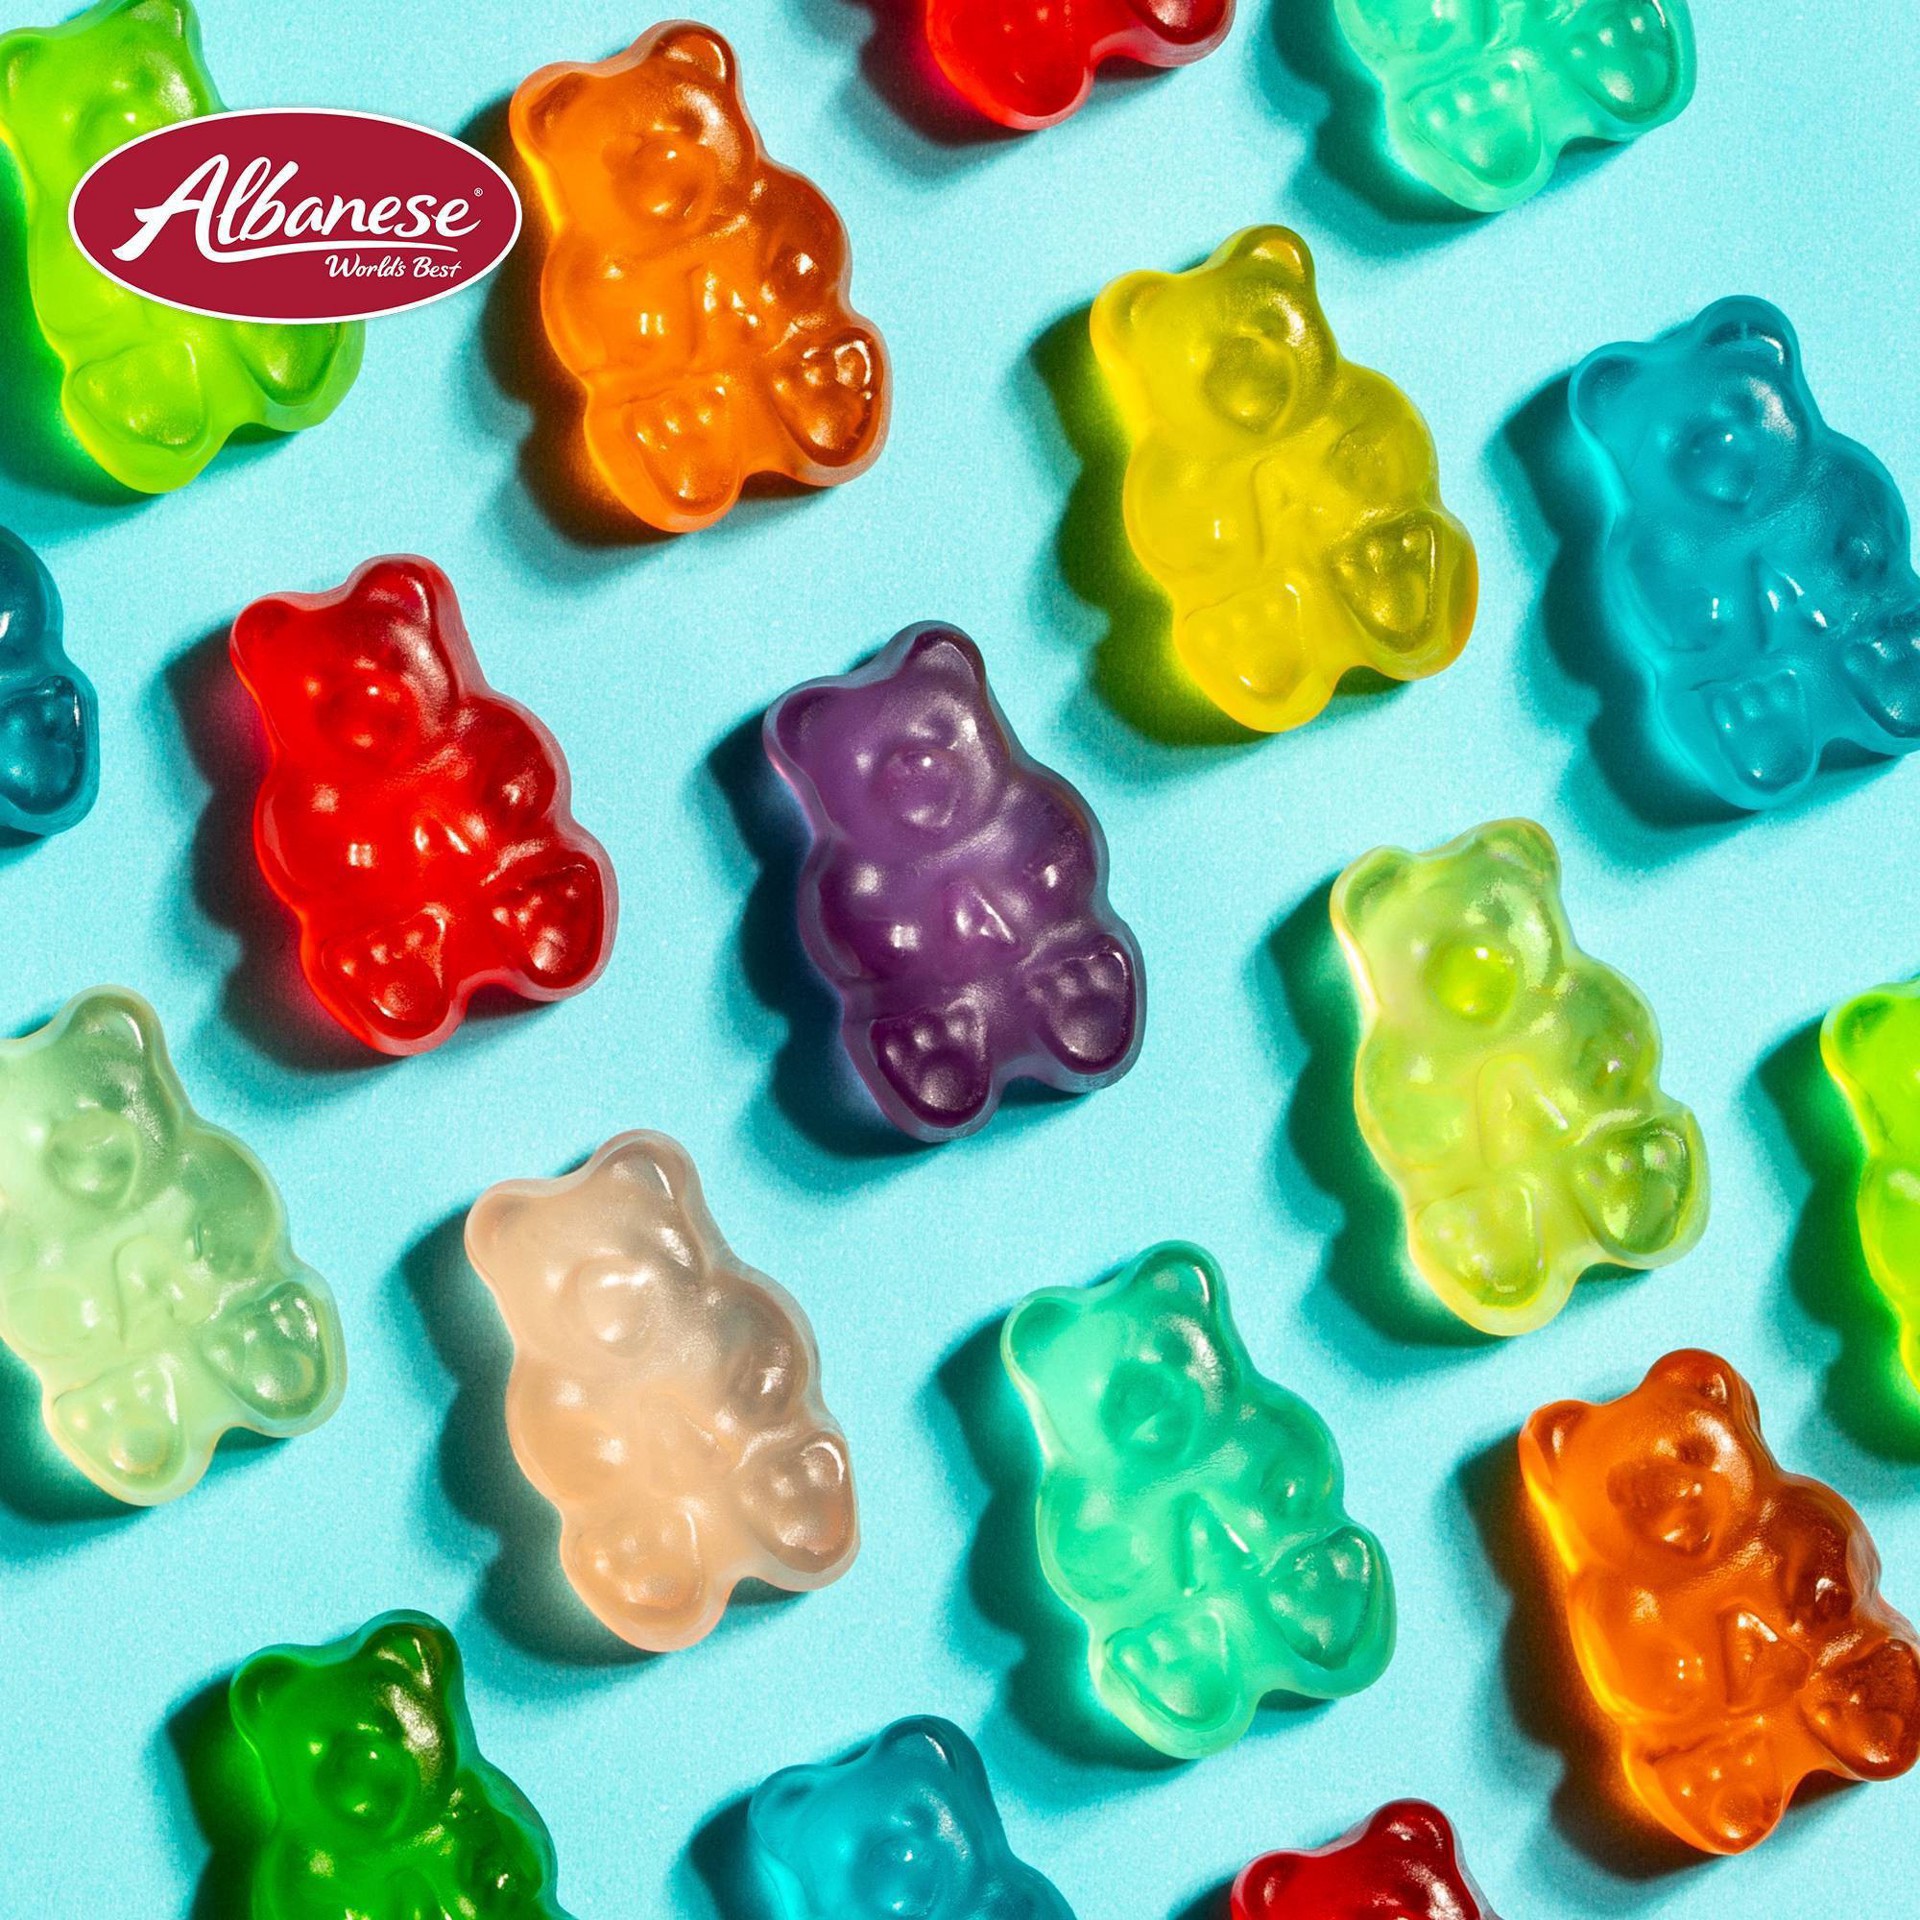 slide 6 of 17, Albanese World's Best 12 Flavor Gummi Bears, 9 oz